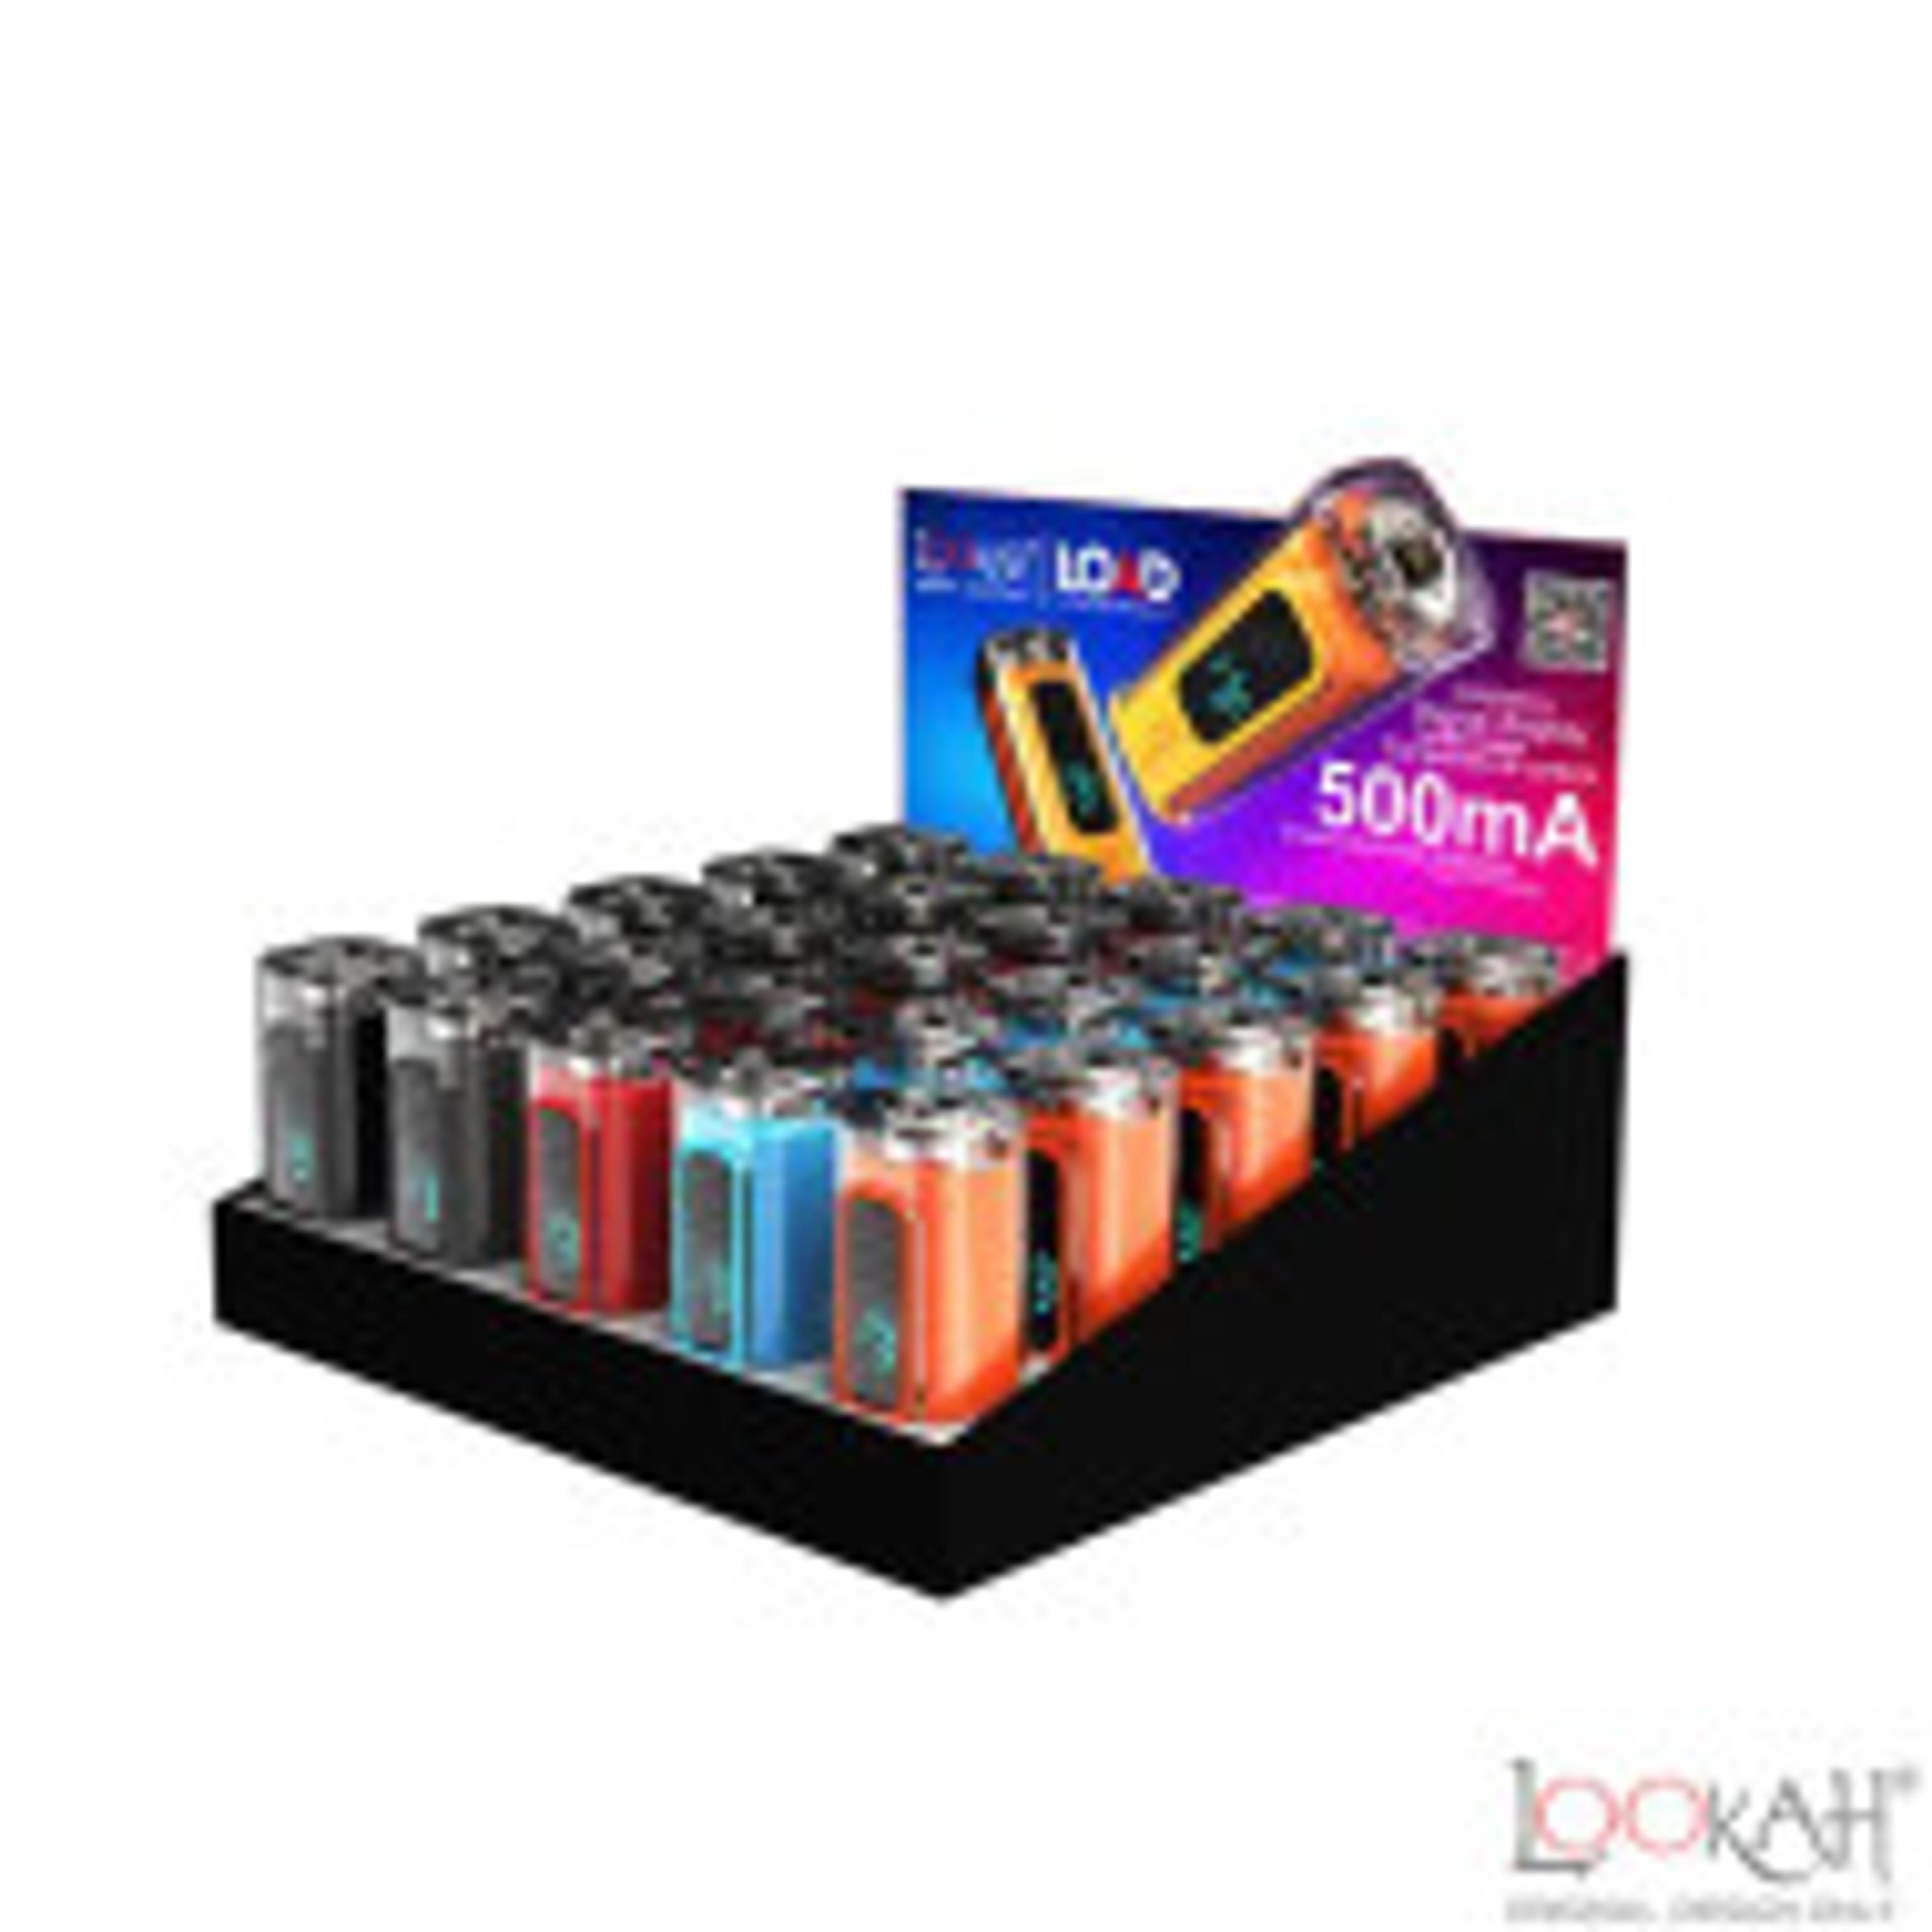 Lookah LOAD 510 Vape Pen Battery 25pcs POP Pack | 500mAh Battery with Digital Display